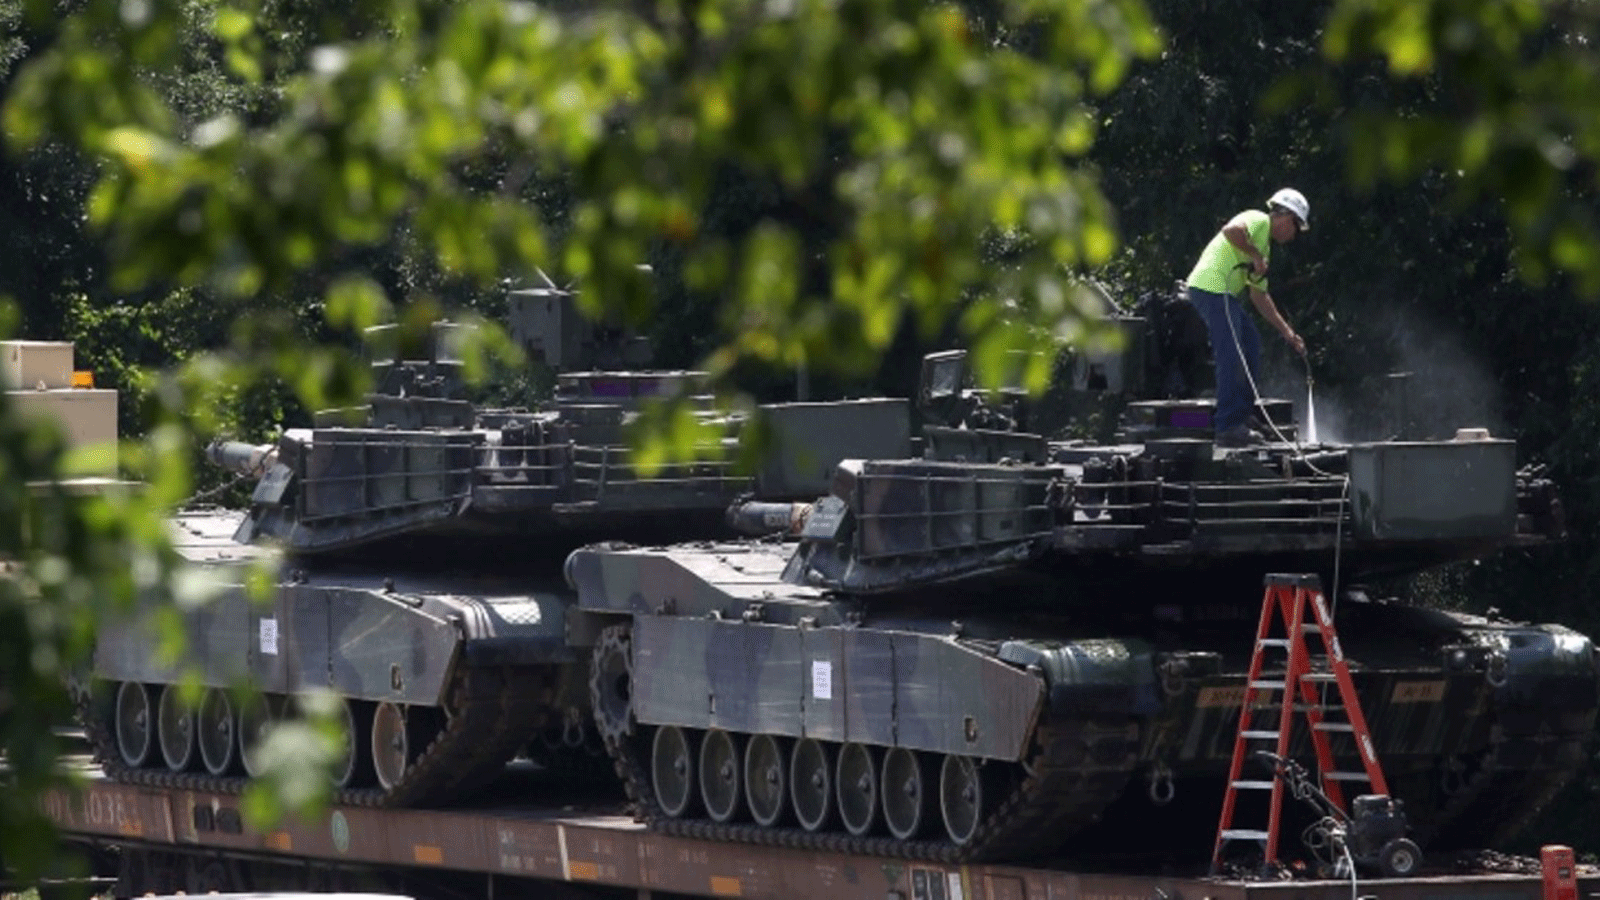 عامل يغسل دبابات M1A1 Abrams تم تحميلهما على عربات سكة حديد في ساحة للسكك الحديدية في 2 تموز/يوليو 2019 في واشنطن